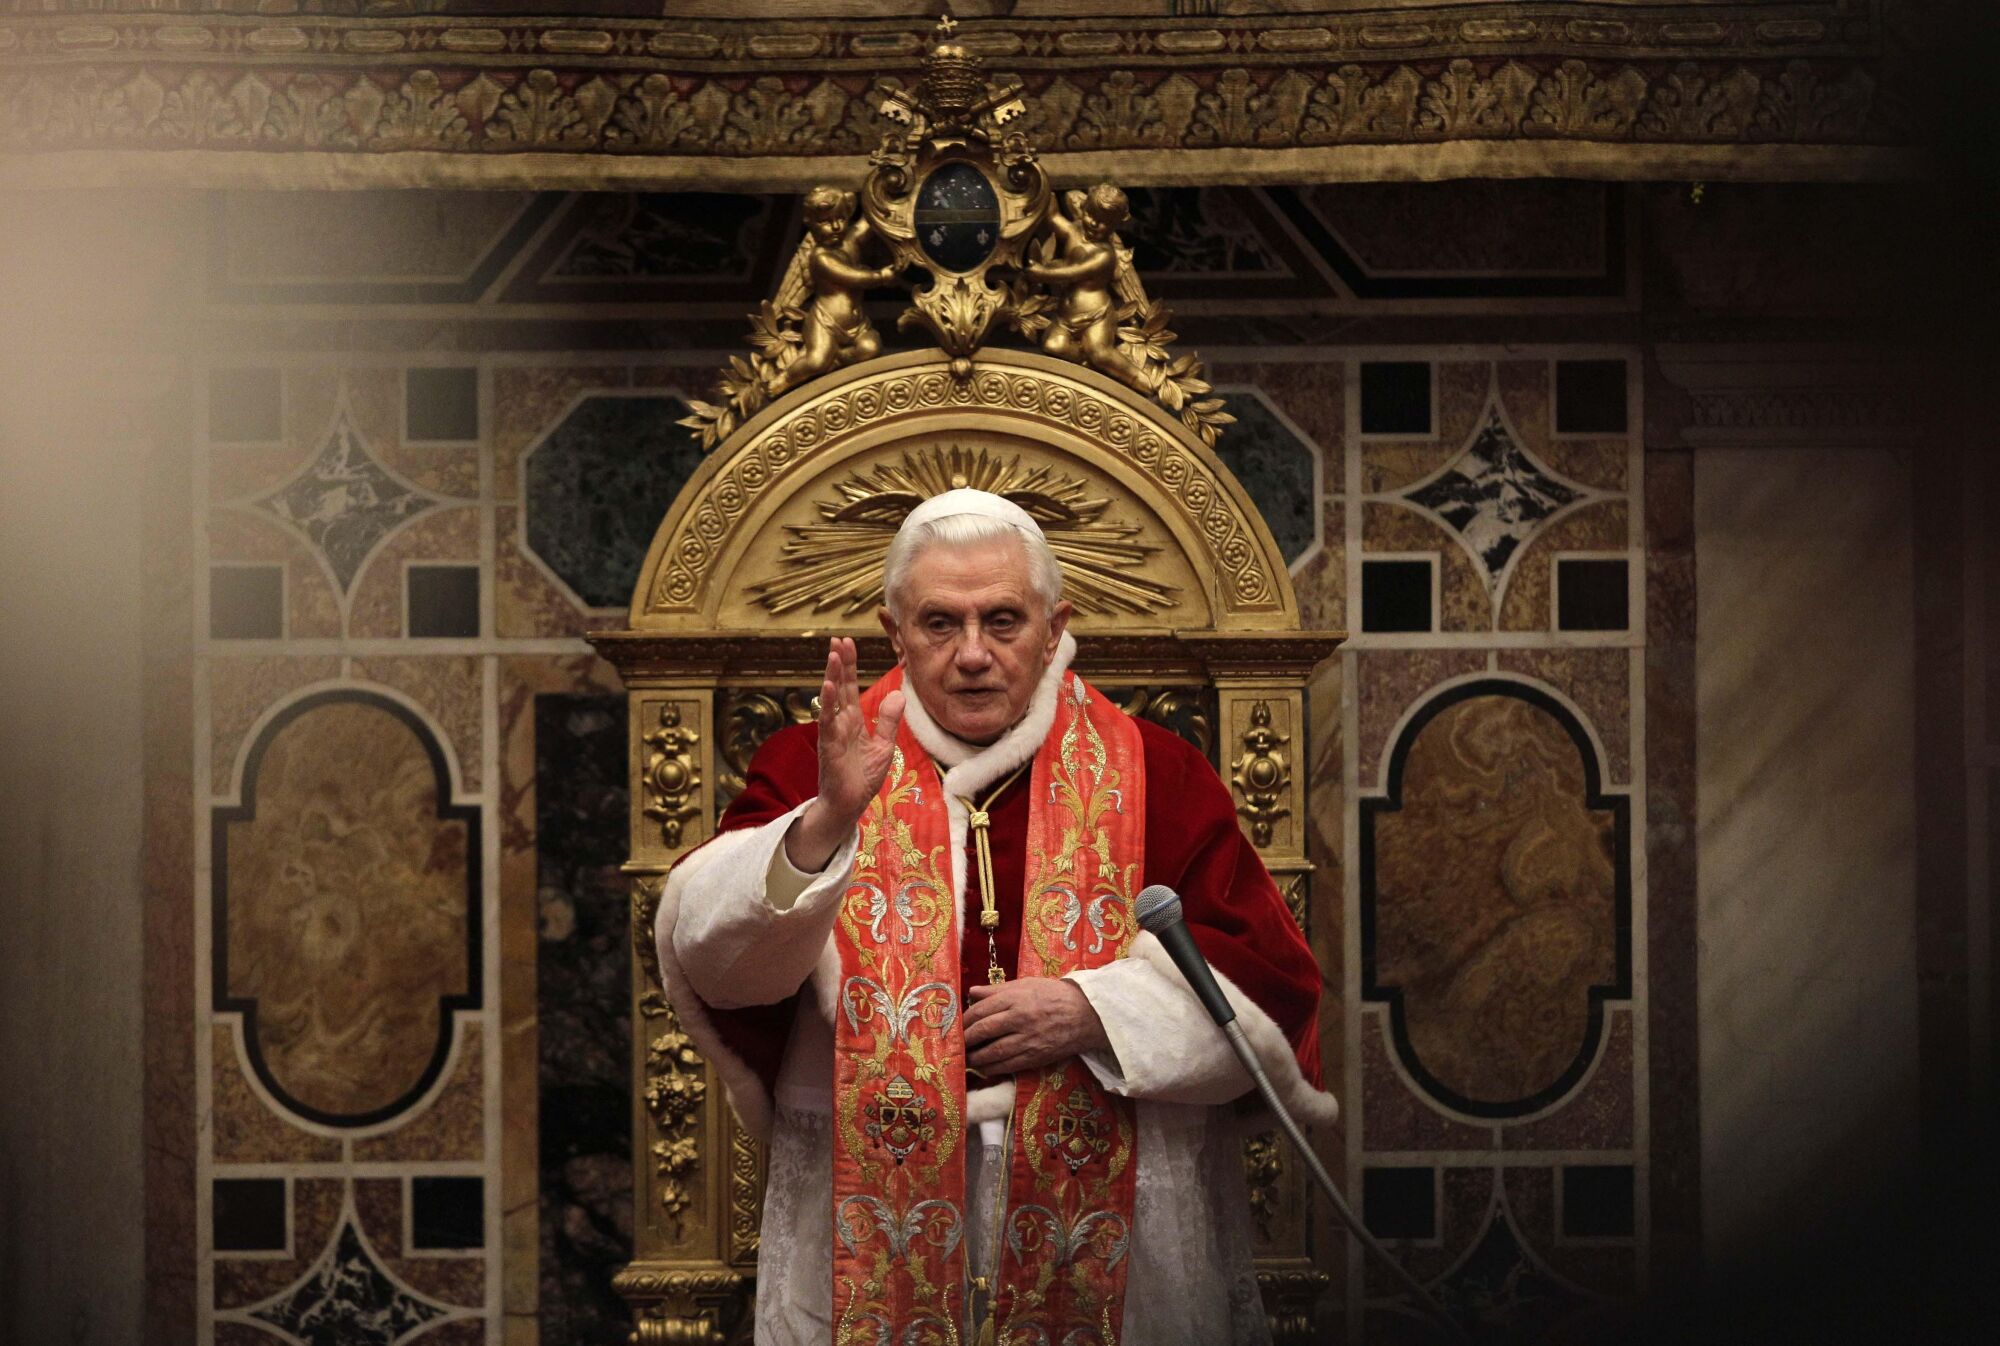 پاپ بندیکت شانزدهم در حالی که جلیقه های قرمز و سفید به تن دارد، دعای خیر خود را ارائه می کند.